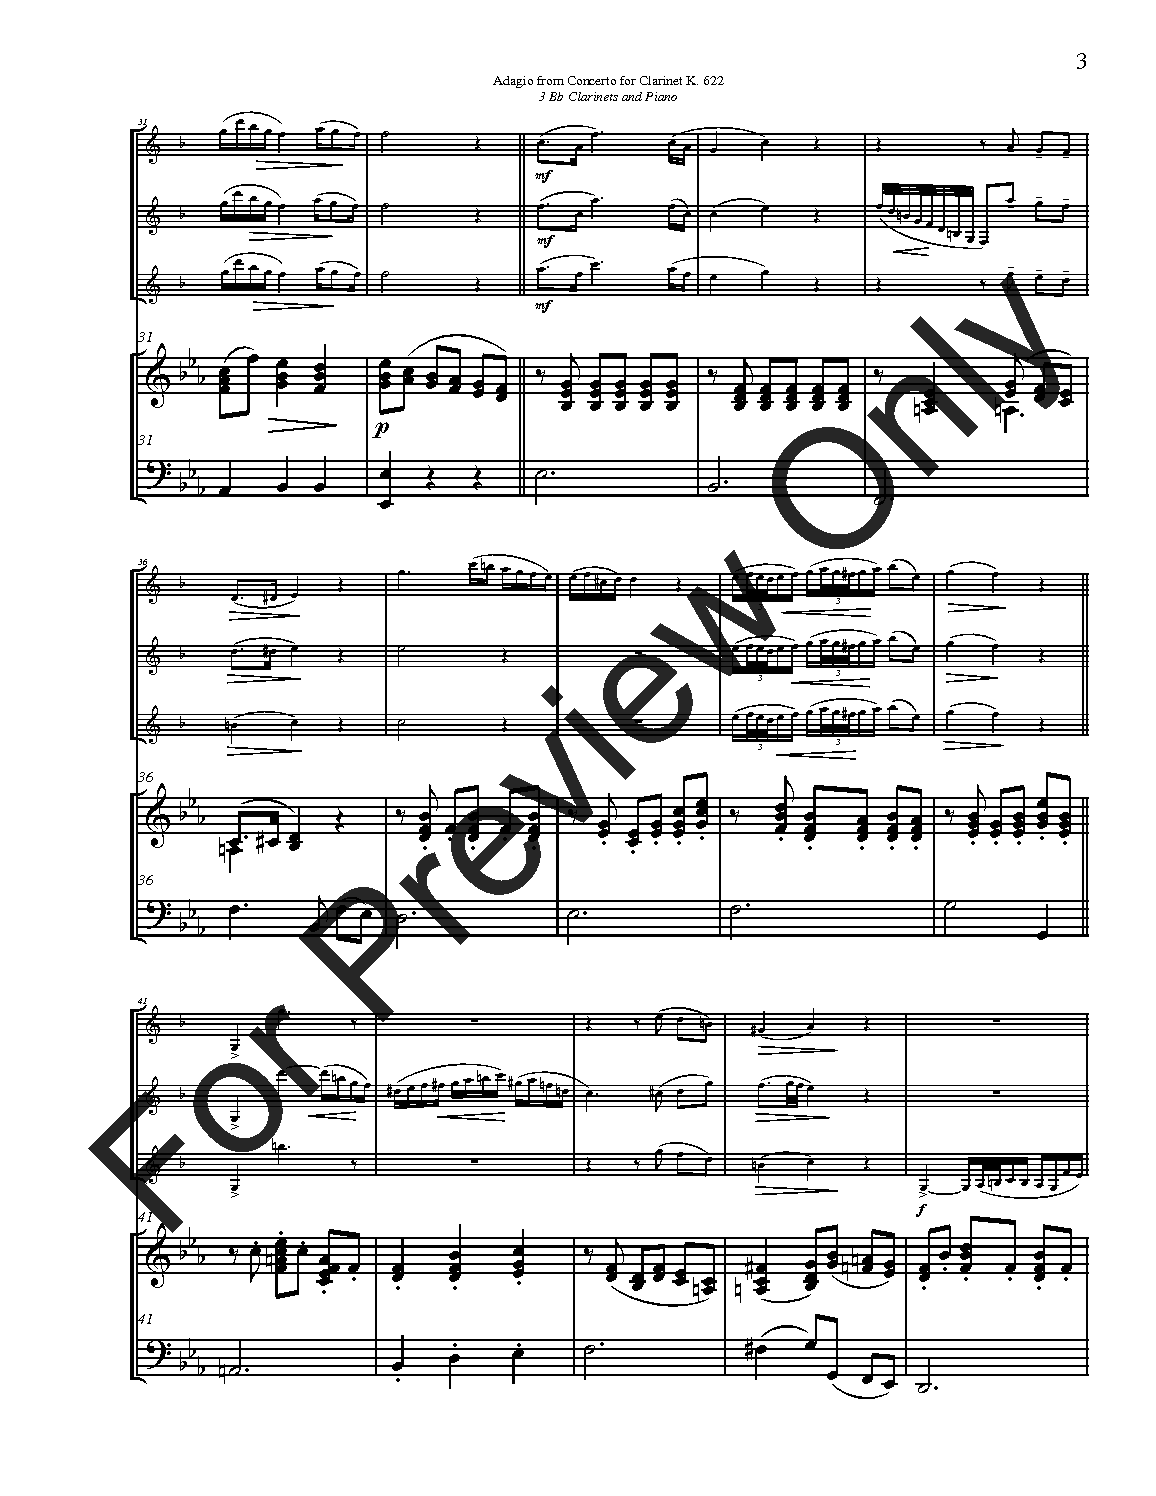 Adagio for Three Bb Clarinets and Piano K 622 P.O.D.